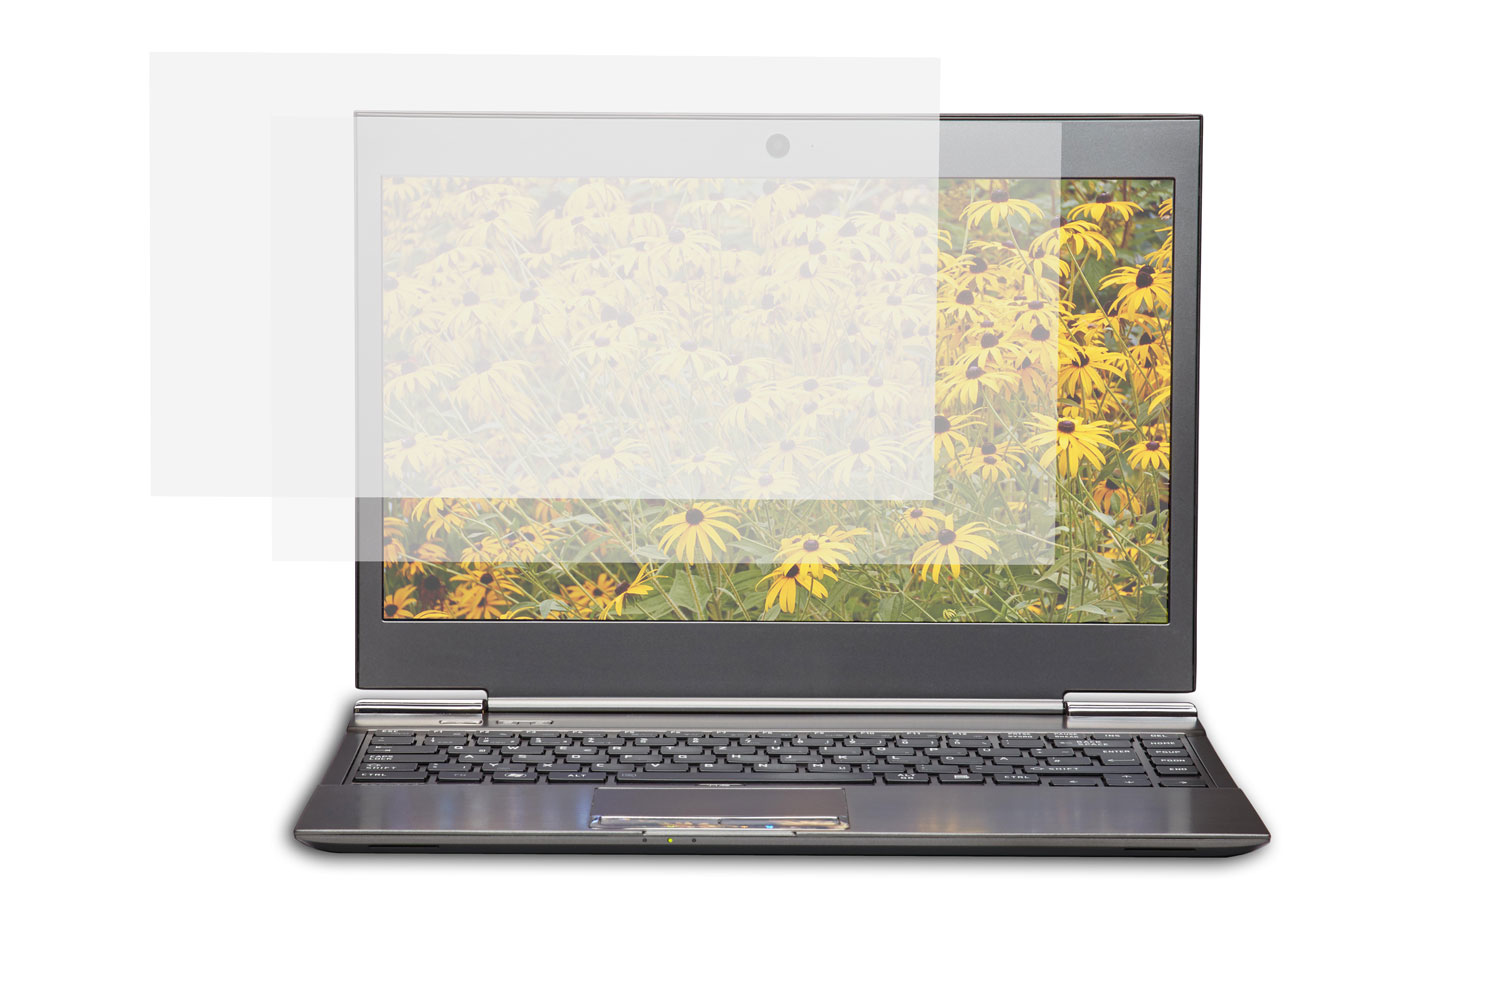 Origin Storage Blendfreier Notebook-Filter - 33,8 cm Breitbild (13,3 Zoll Breitbild)